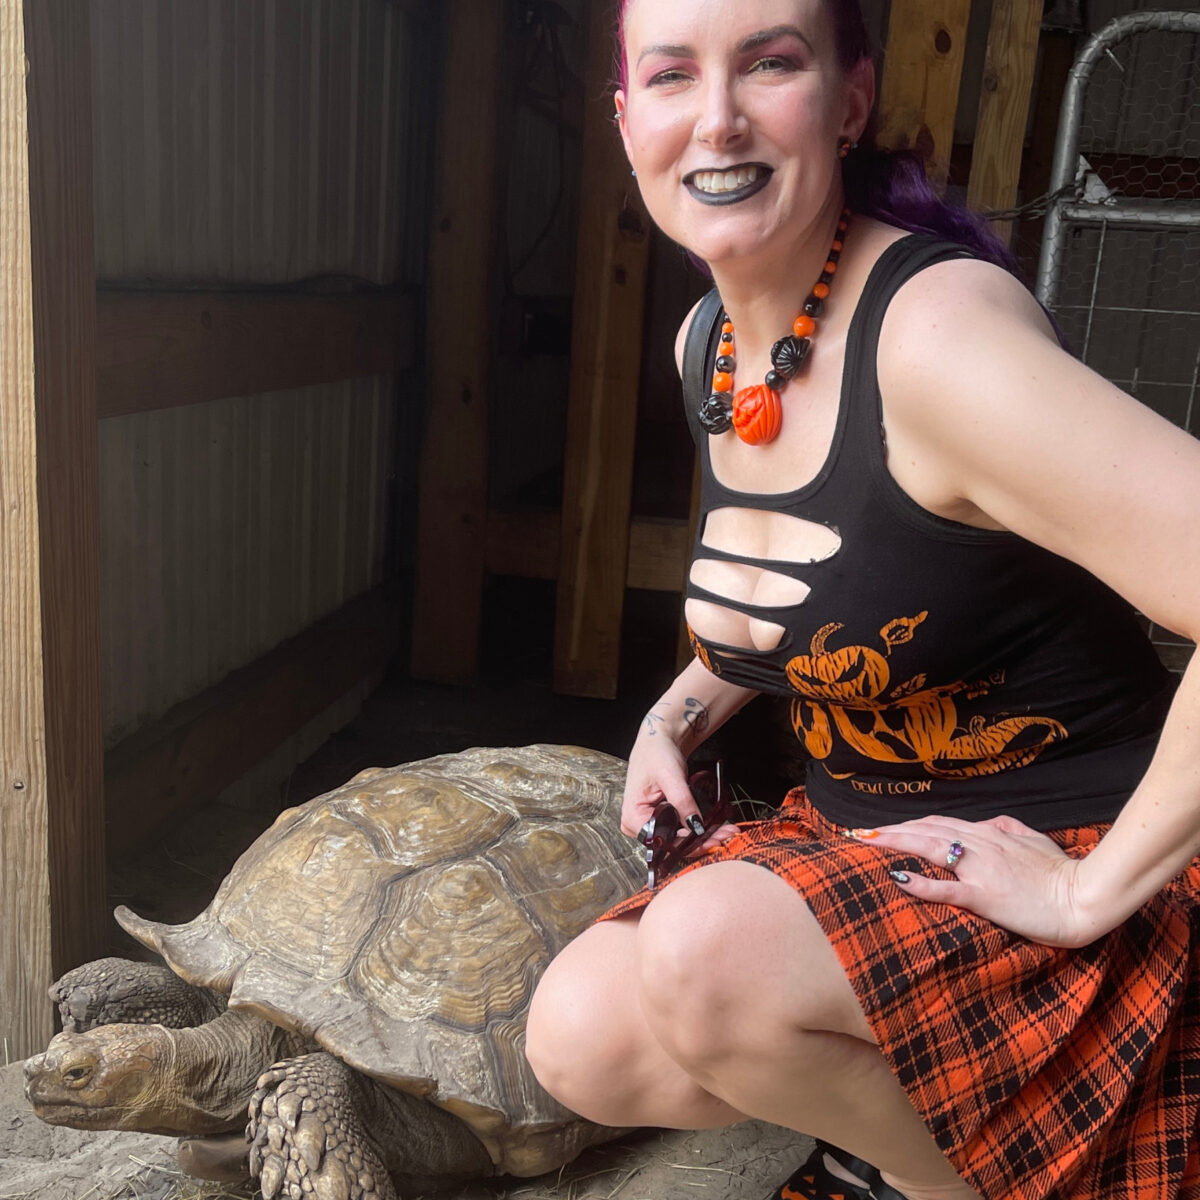 Cordelia next to a tortoise